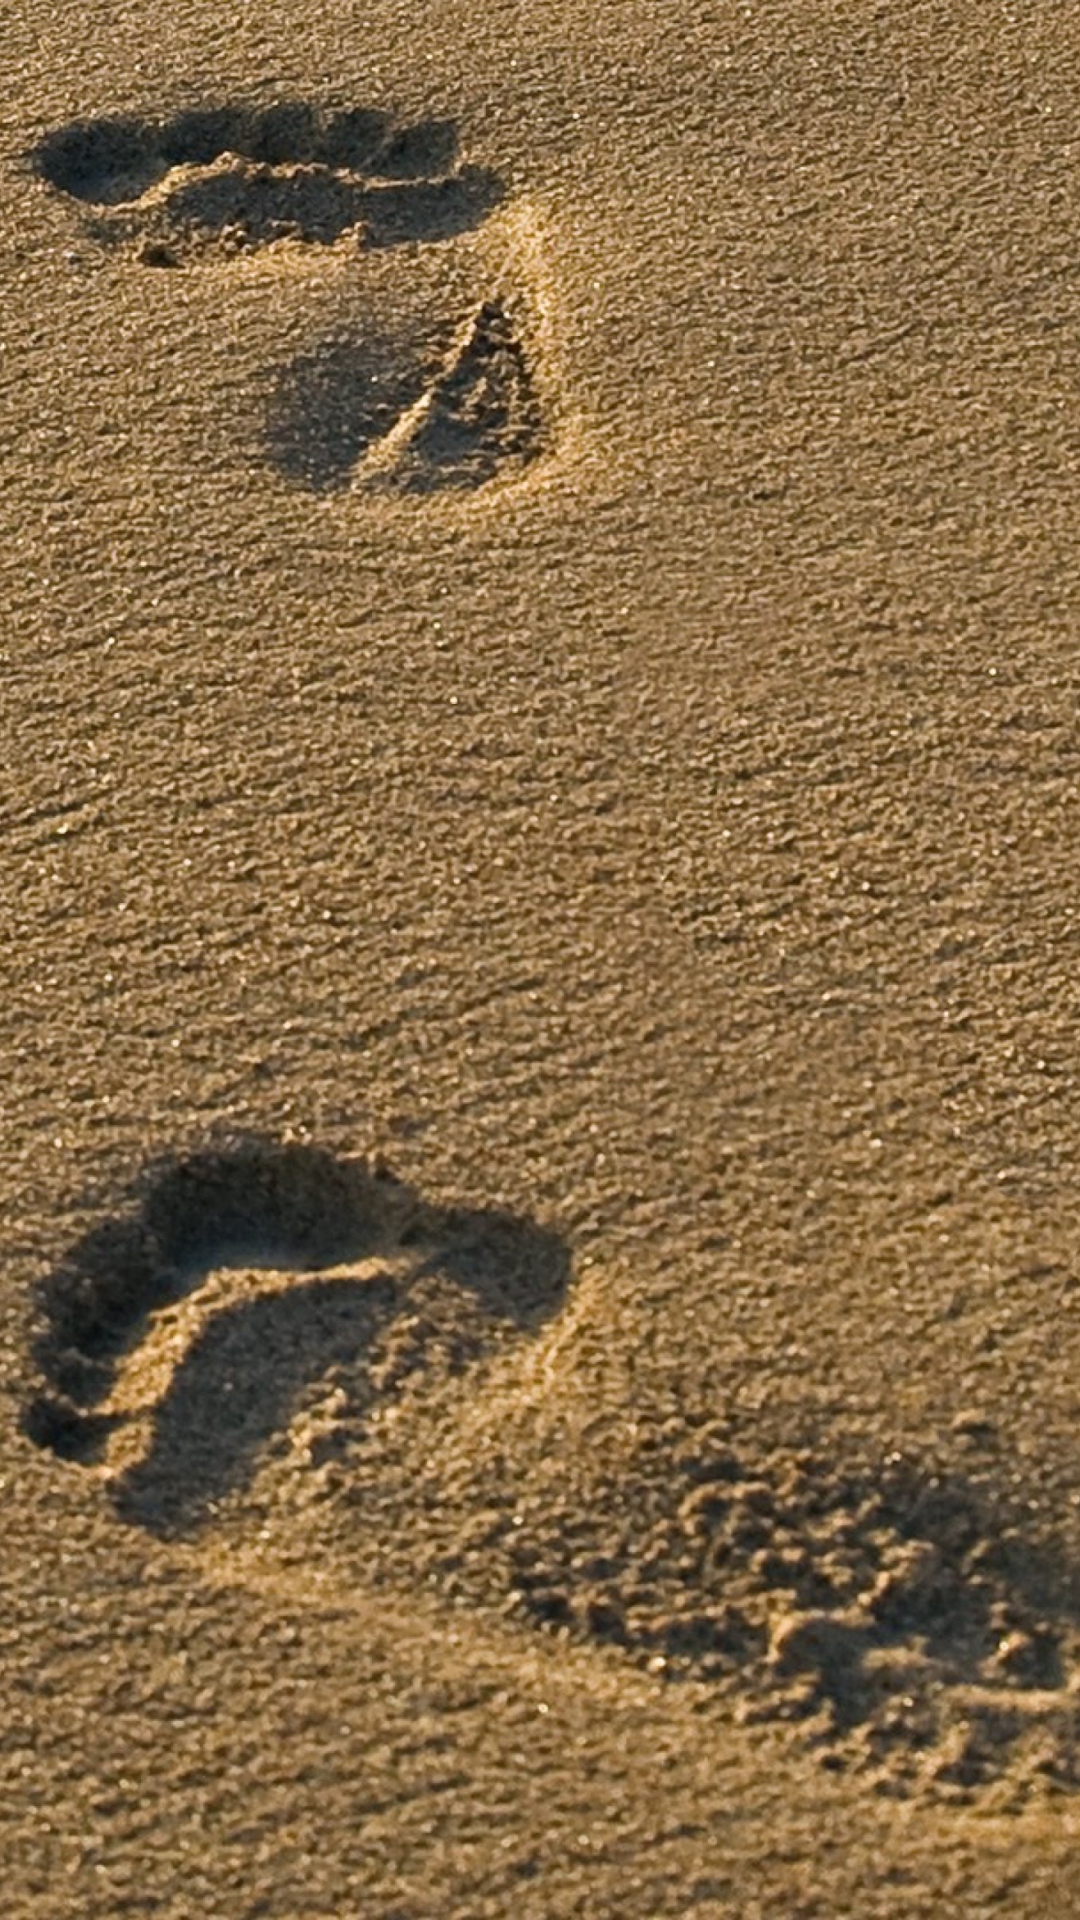 Footprints On Sand wallpaper 1080x1920